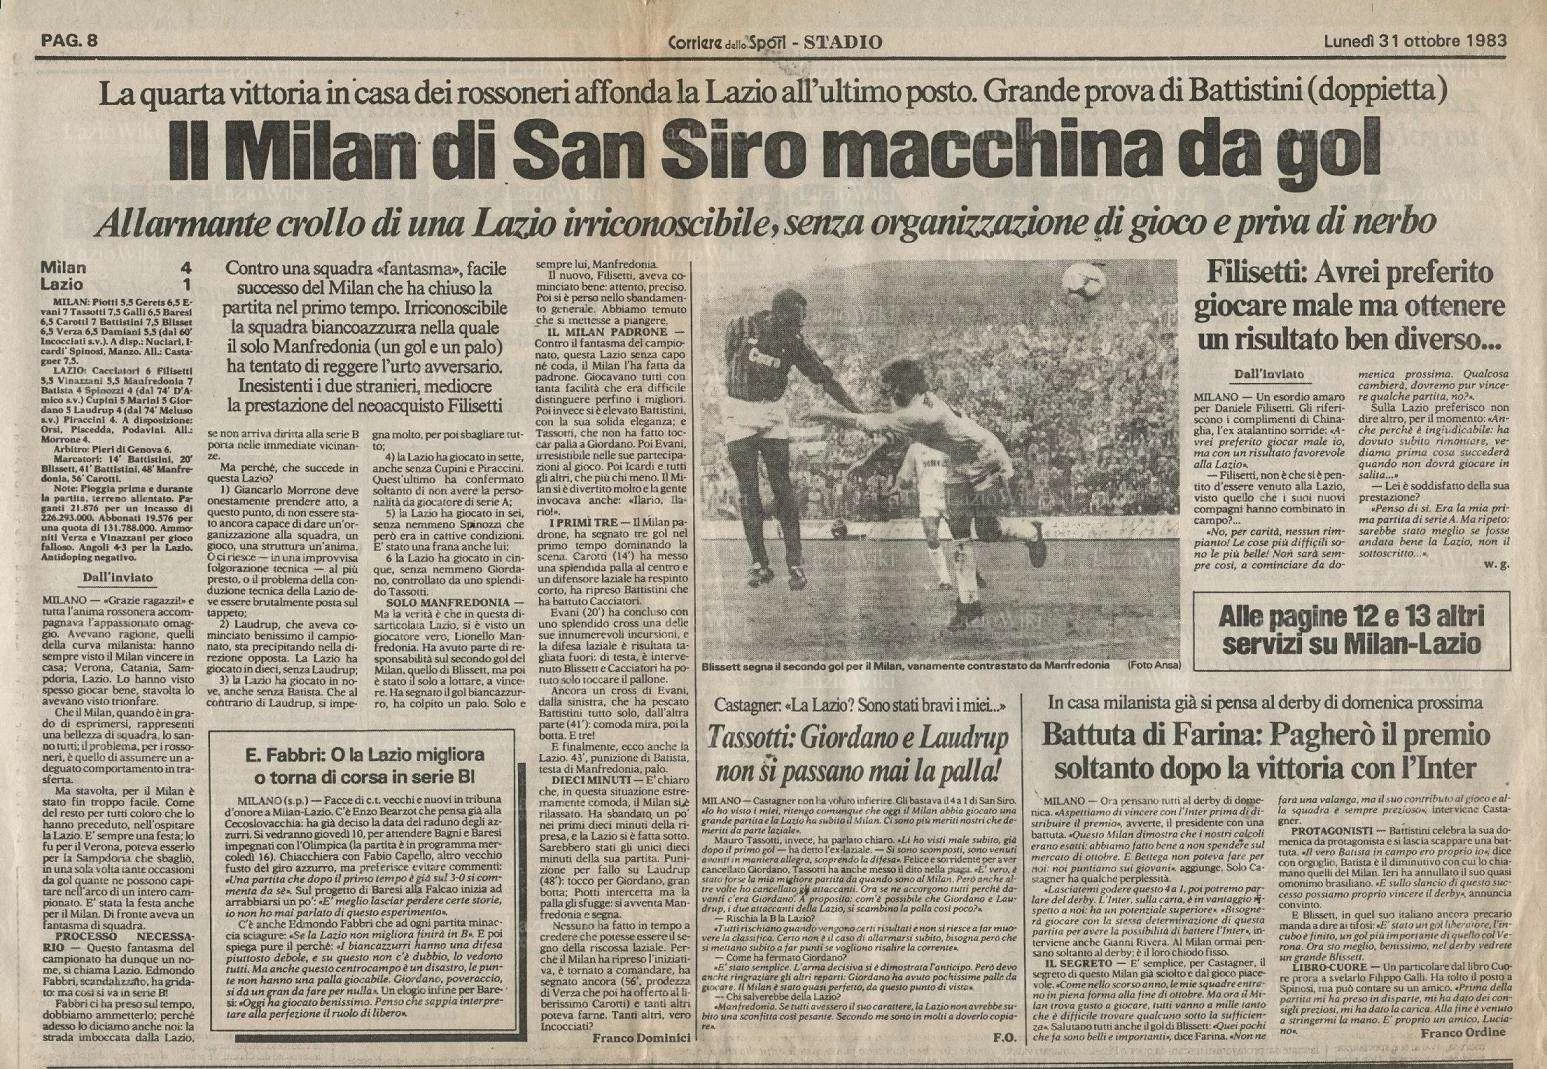 Accadde oggi: Serie A 1983/84, Milan-Lazio 4-1